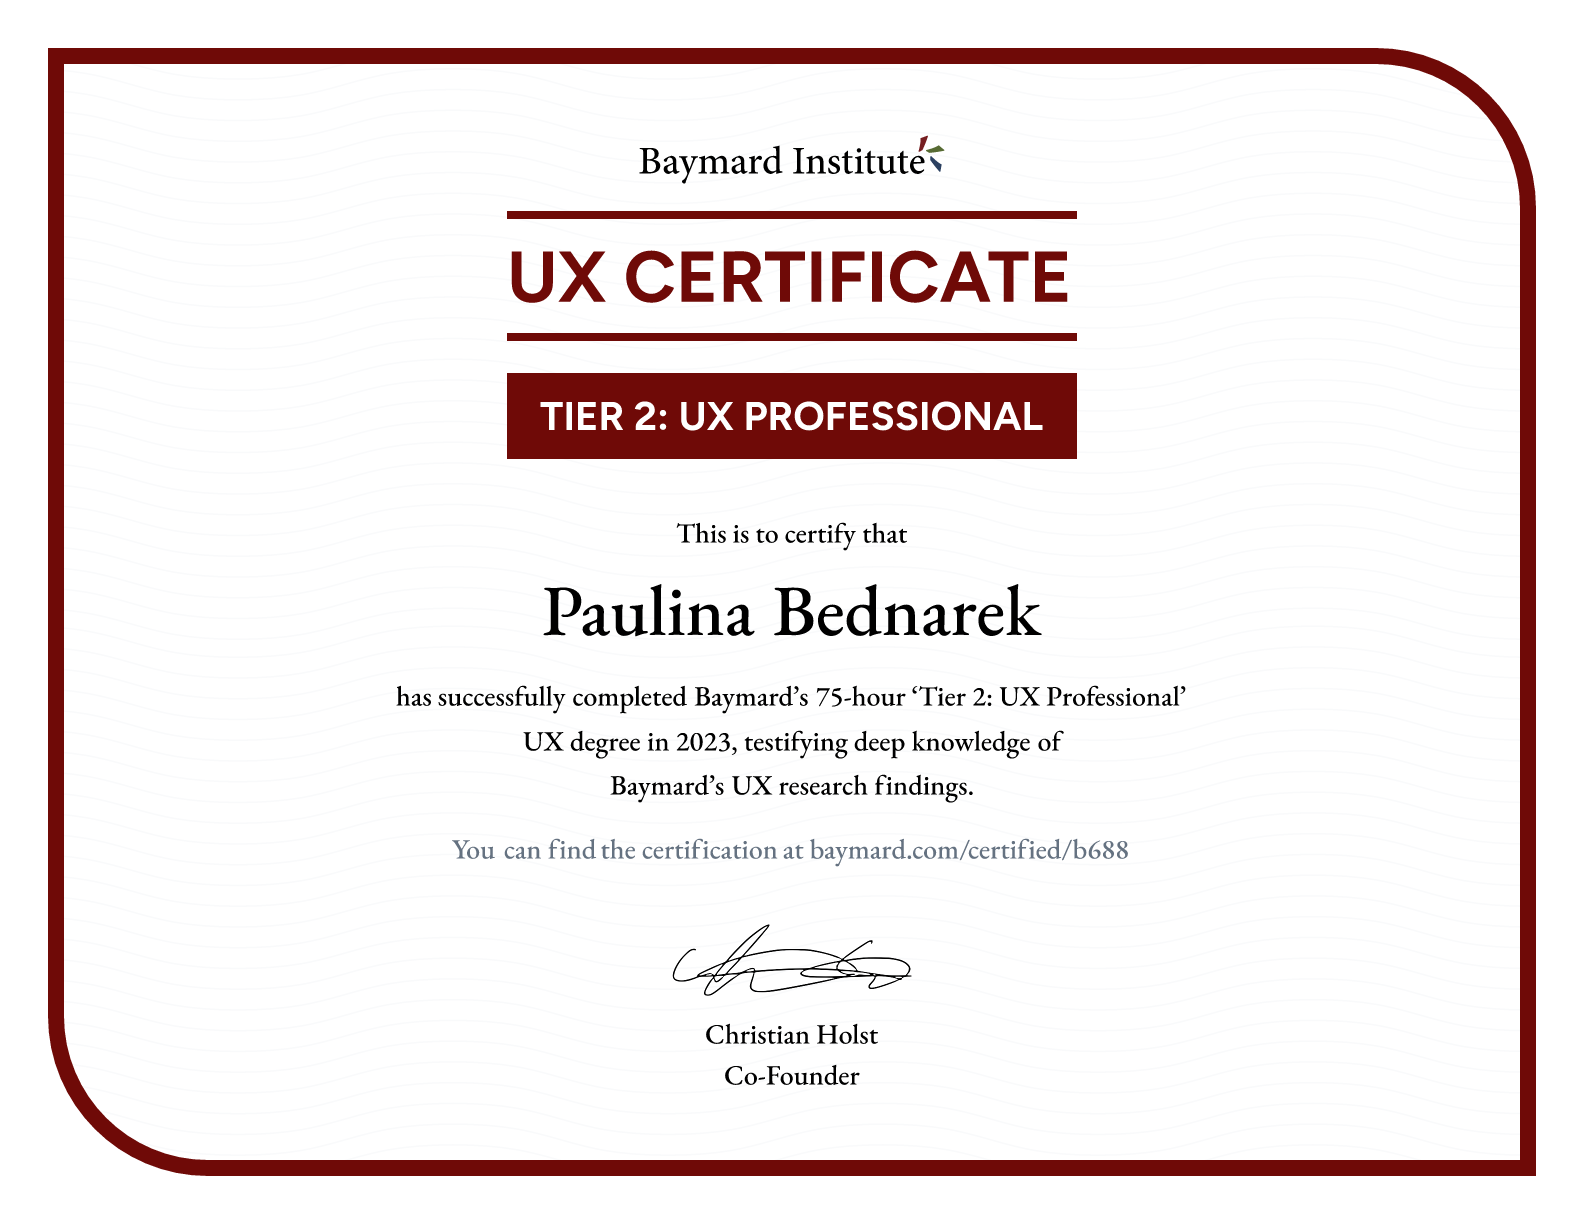 Paulina Bednarek’s certificate